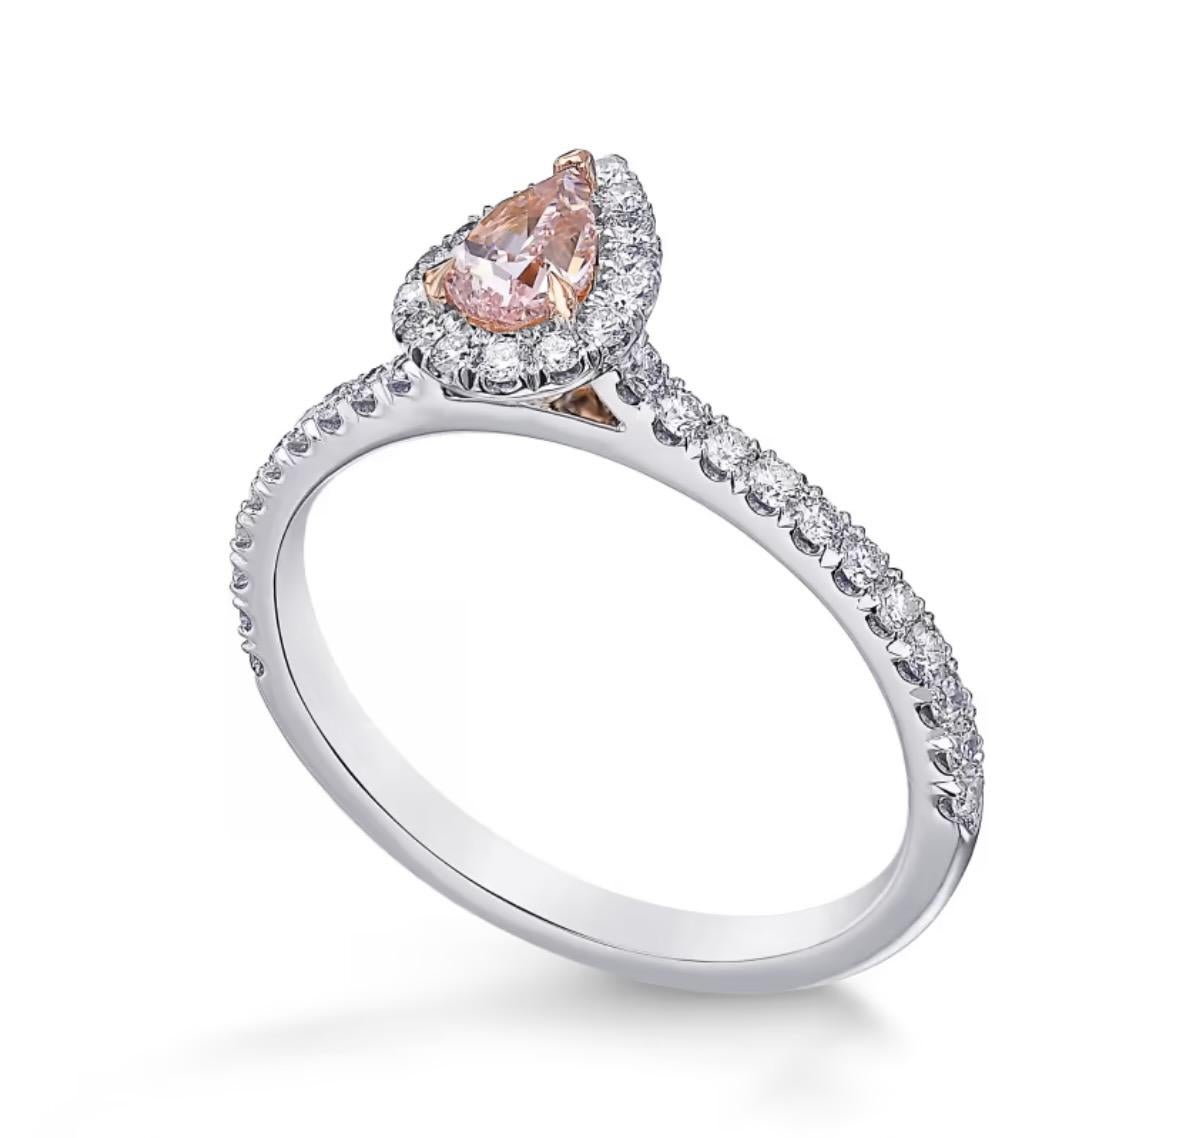 Fancy Intense Pink Natural Diamond 0,36 Karat Birnenform. I2 Klarheit. 
Laut Gia-Zertifikat 15830774.
Zentrierter weißer Diamant auf weißem 18-karätigem Goldring.

Ausgefallener intensiver rosa Naturdiamant 
Abmessungen: 6,29 x 4,21 x 2,28 mm.

Can